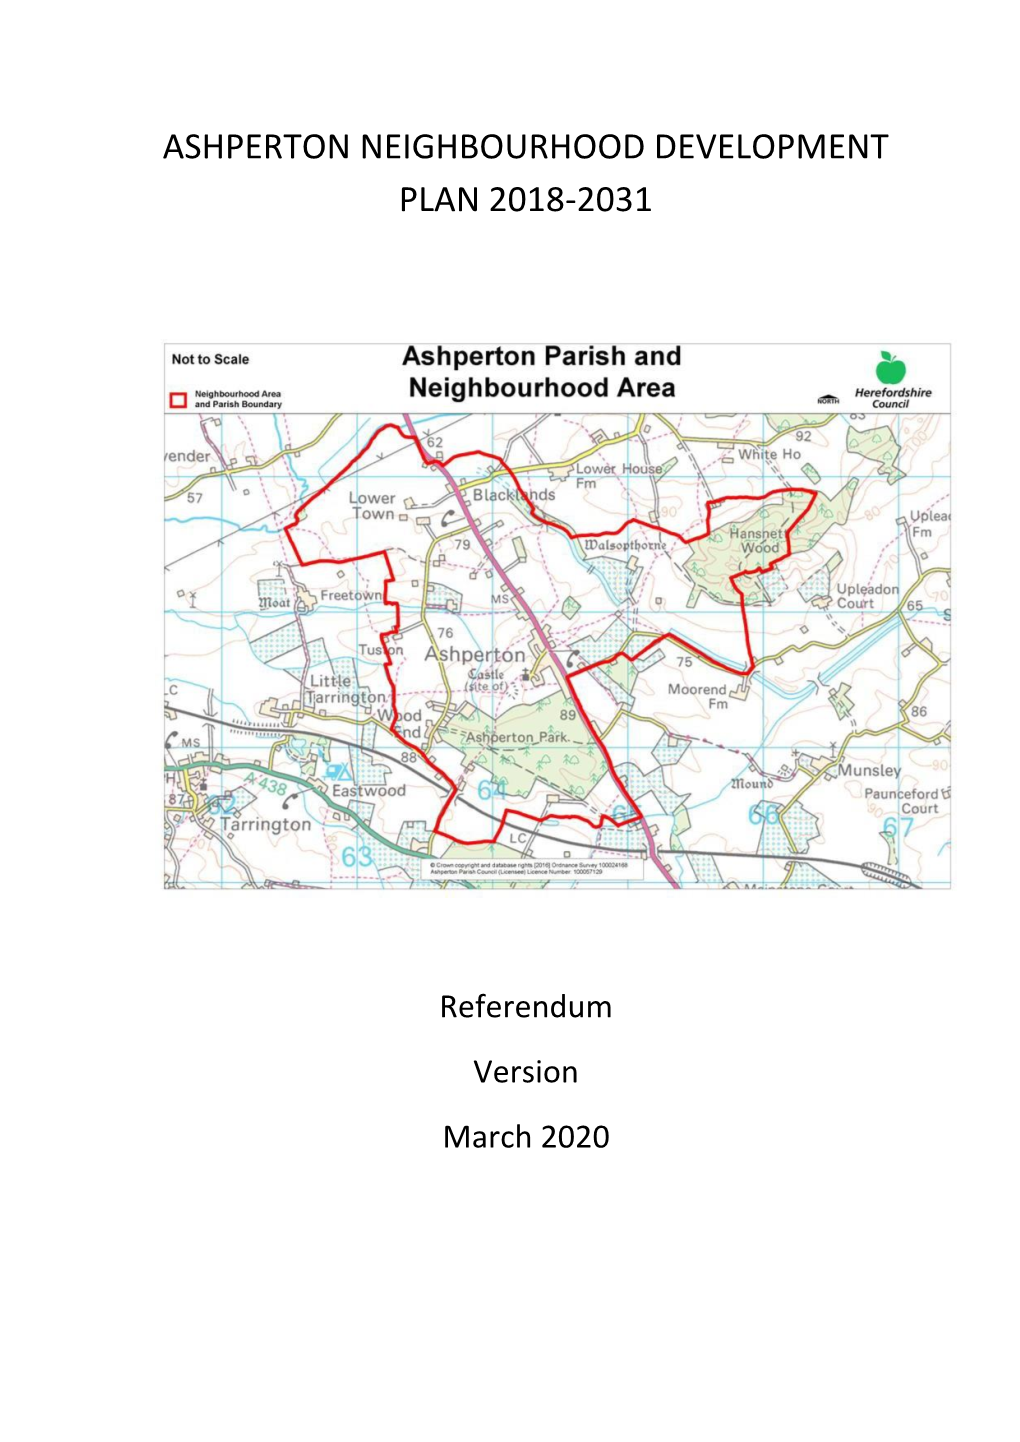 Ashperton Neighbourhood Development Plan March 2020